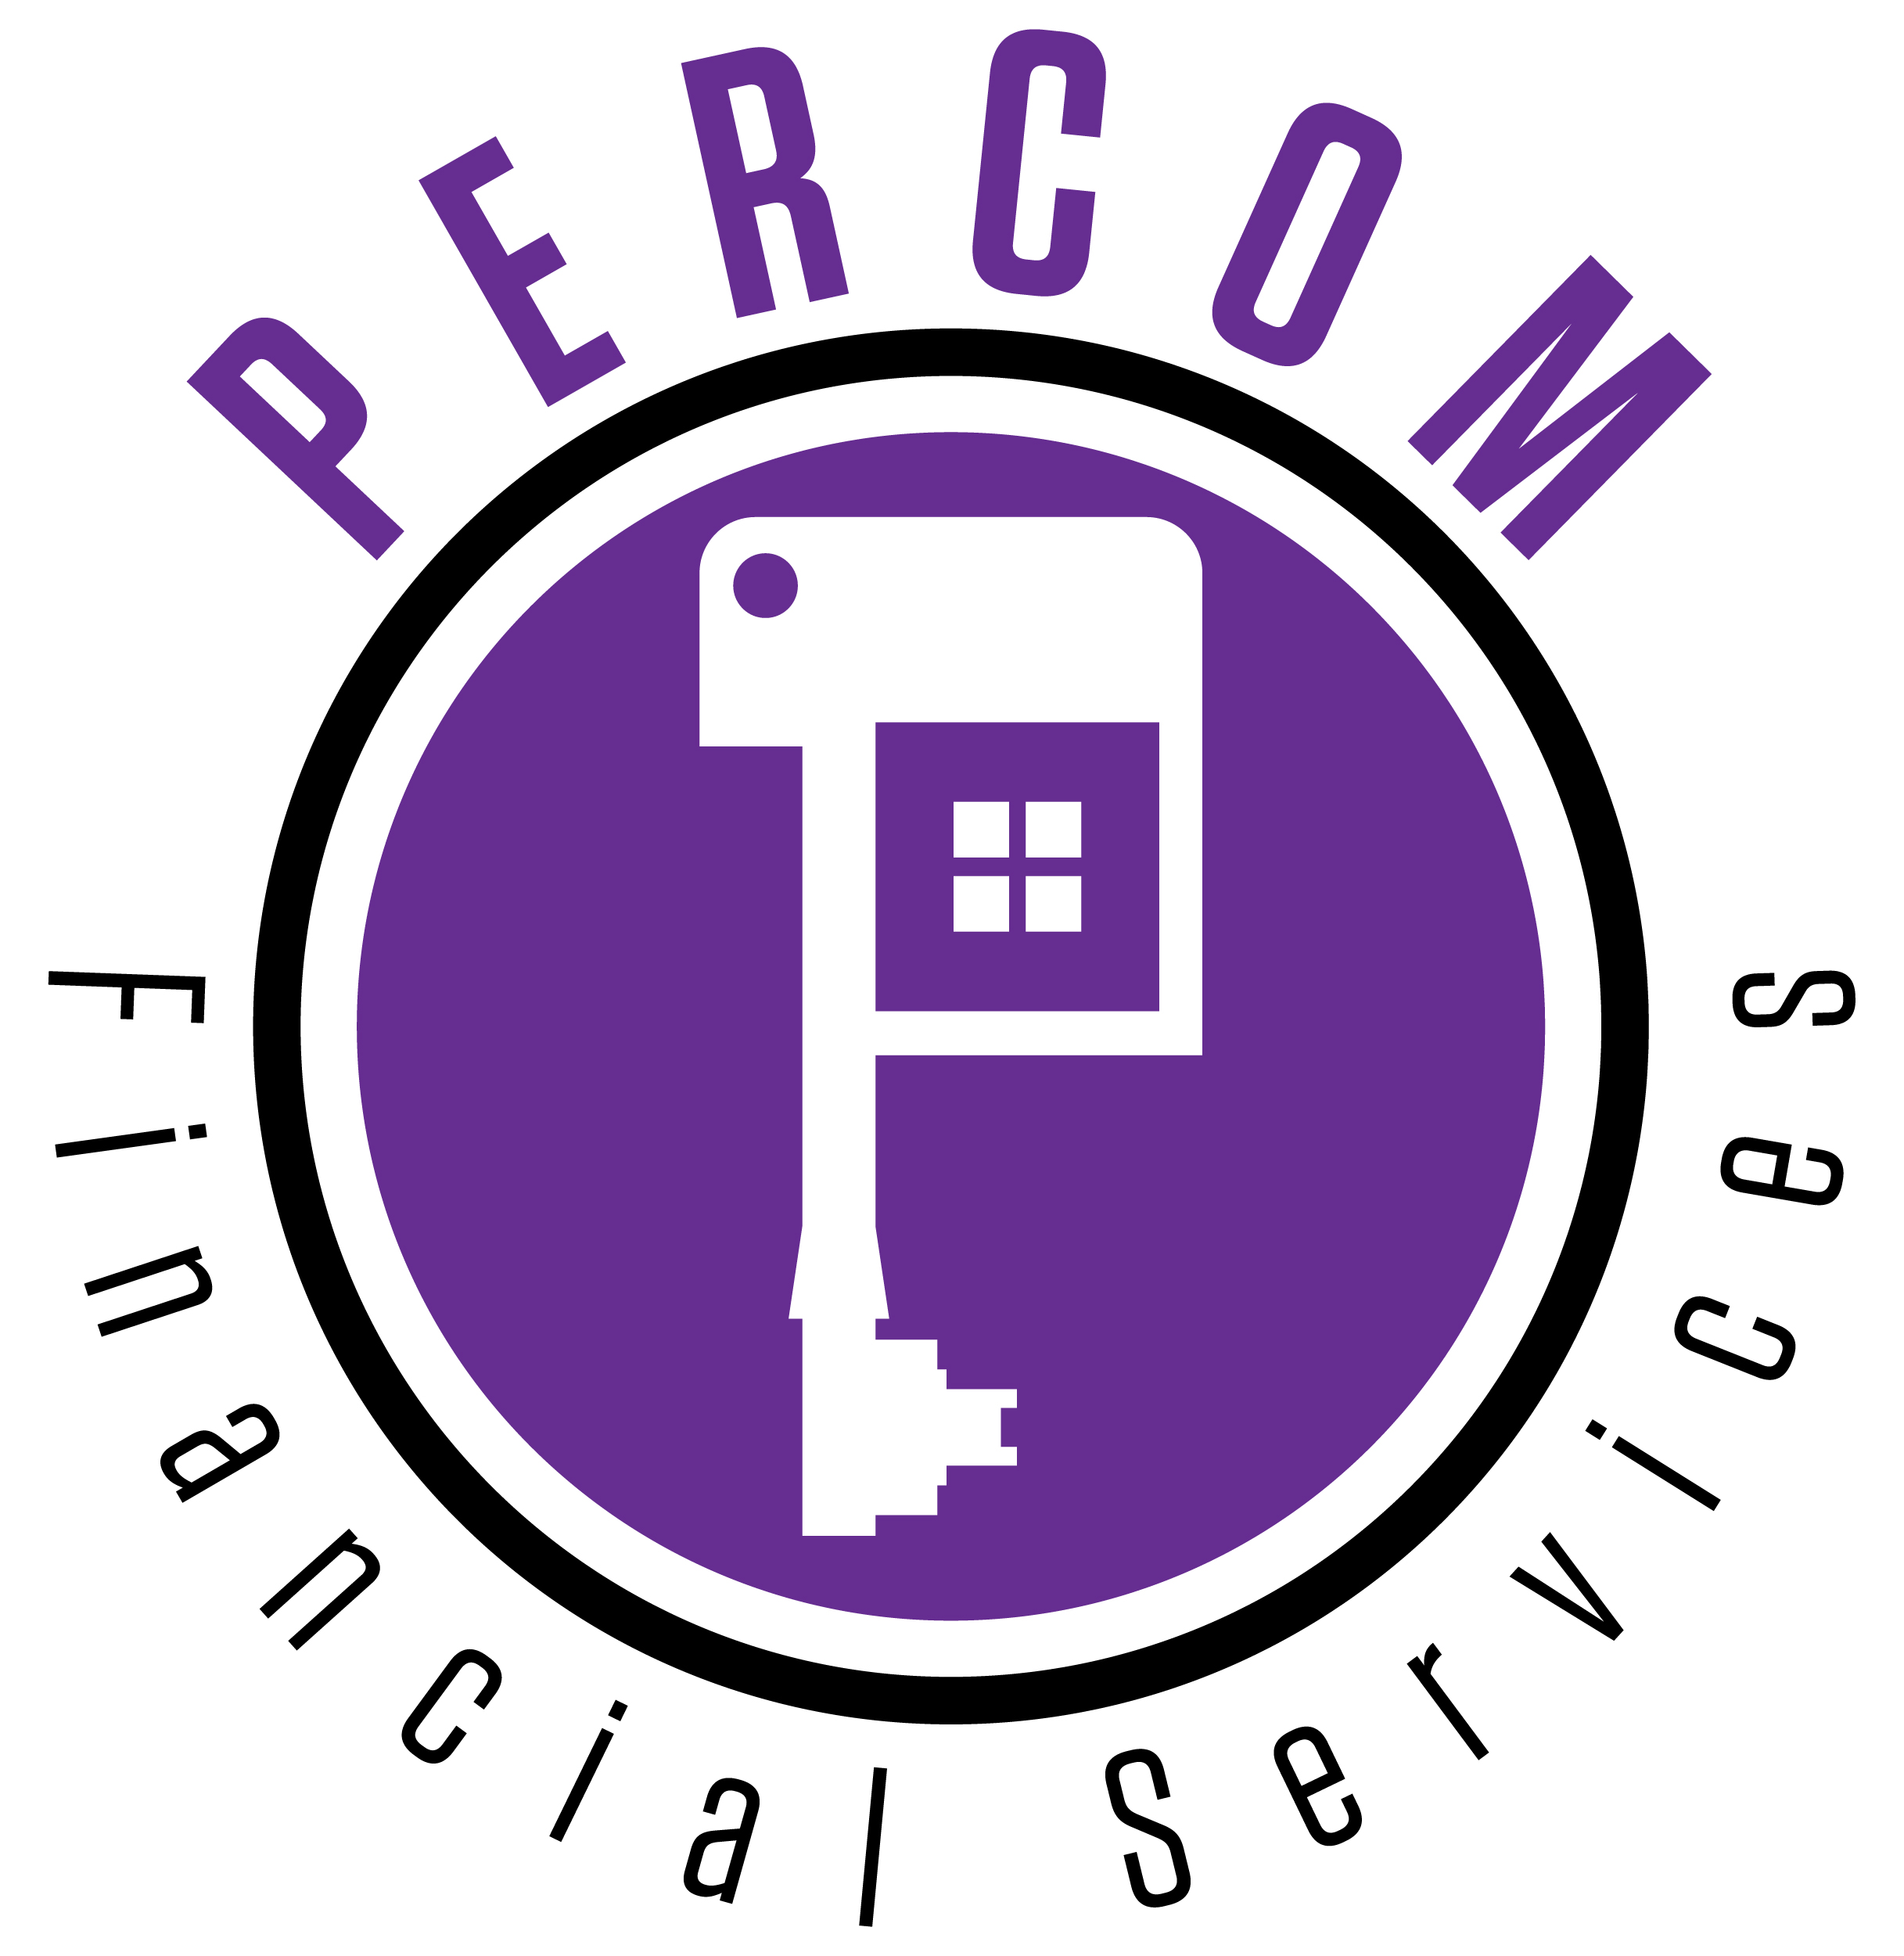 Percom Financial Services